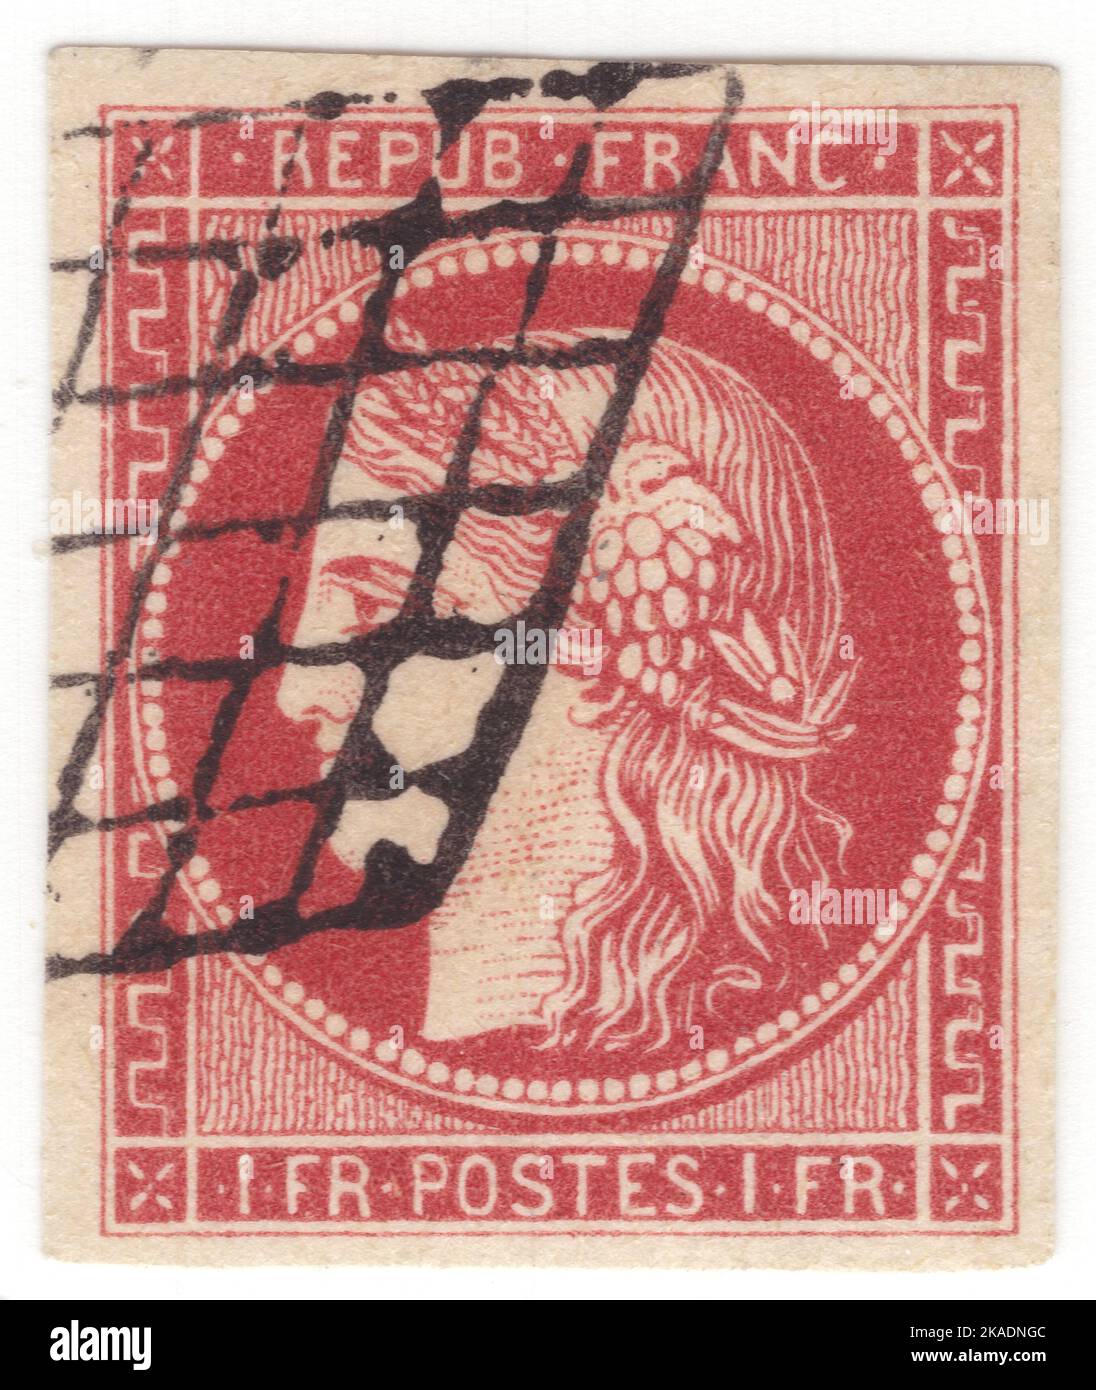 FRANCIA - 1849: Un sello franco de carmín de luz de 1 que representa Ceres — Diosa de la agricultura, la fertilidad, los granos, la cosecha, la maternidad, la tierra, y cultivó las cosechas Foto de stock